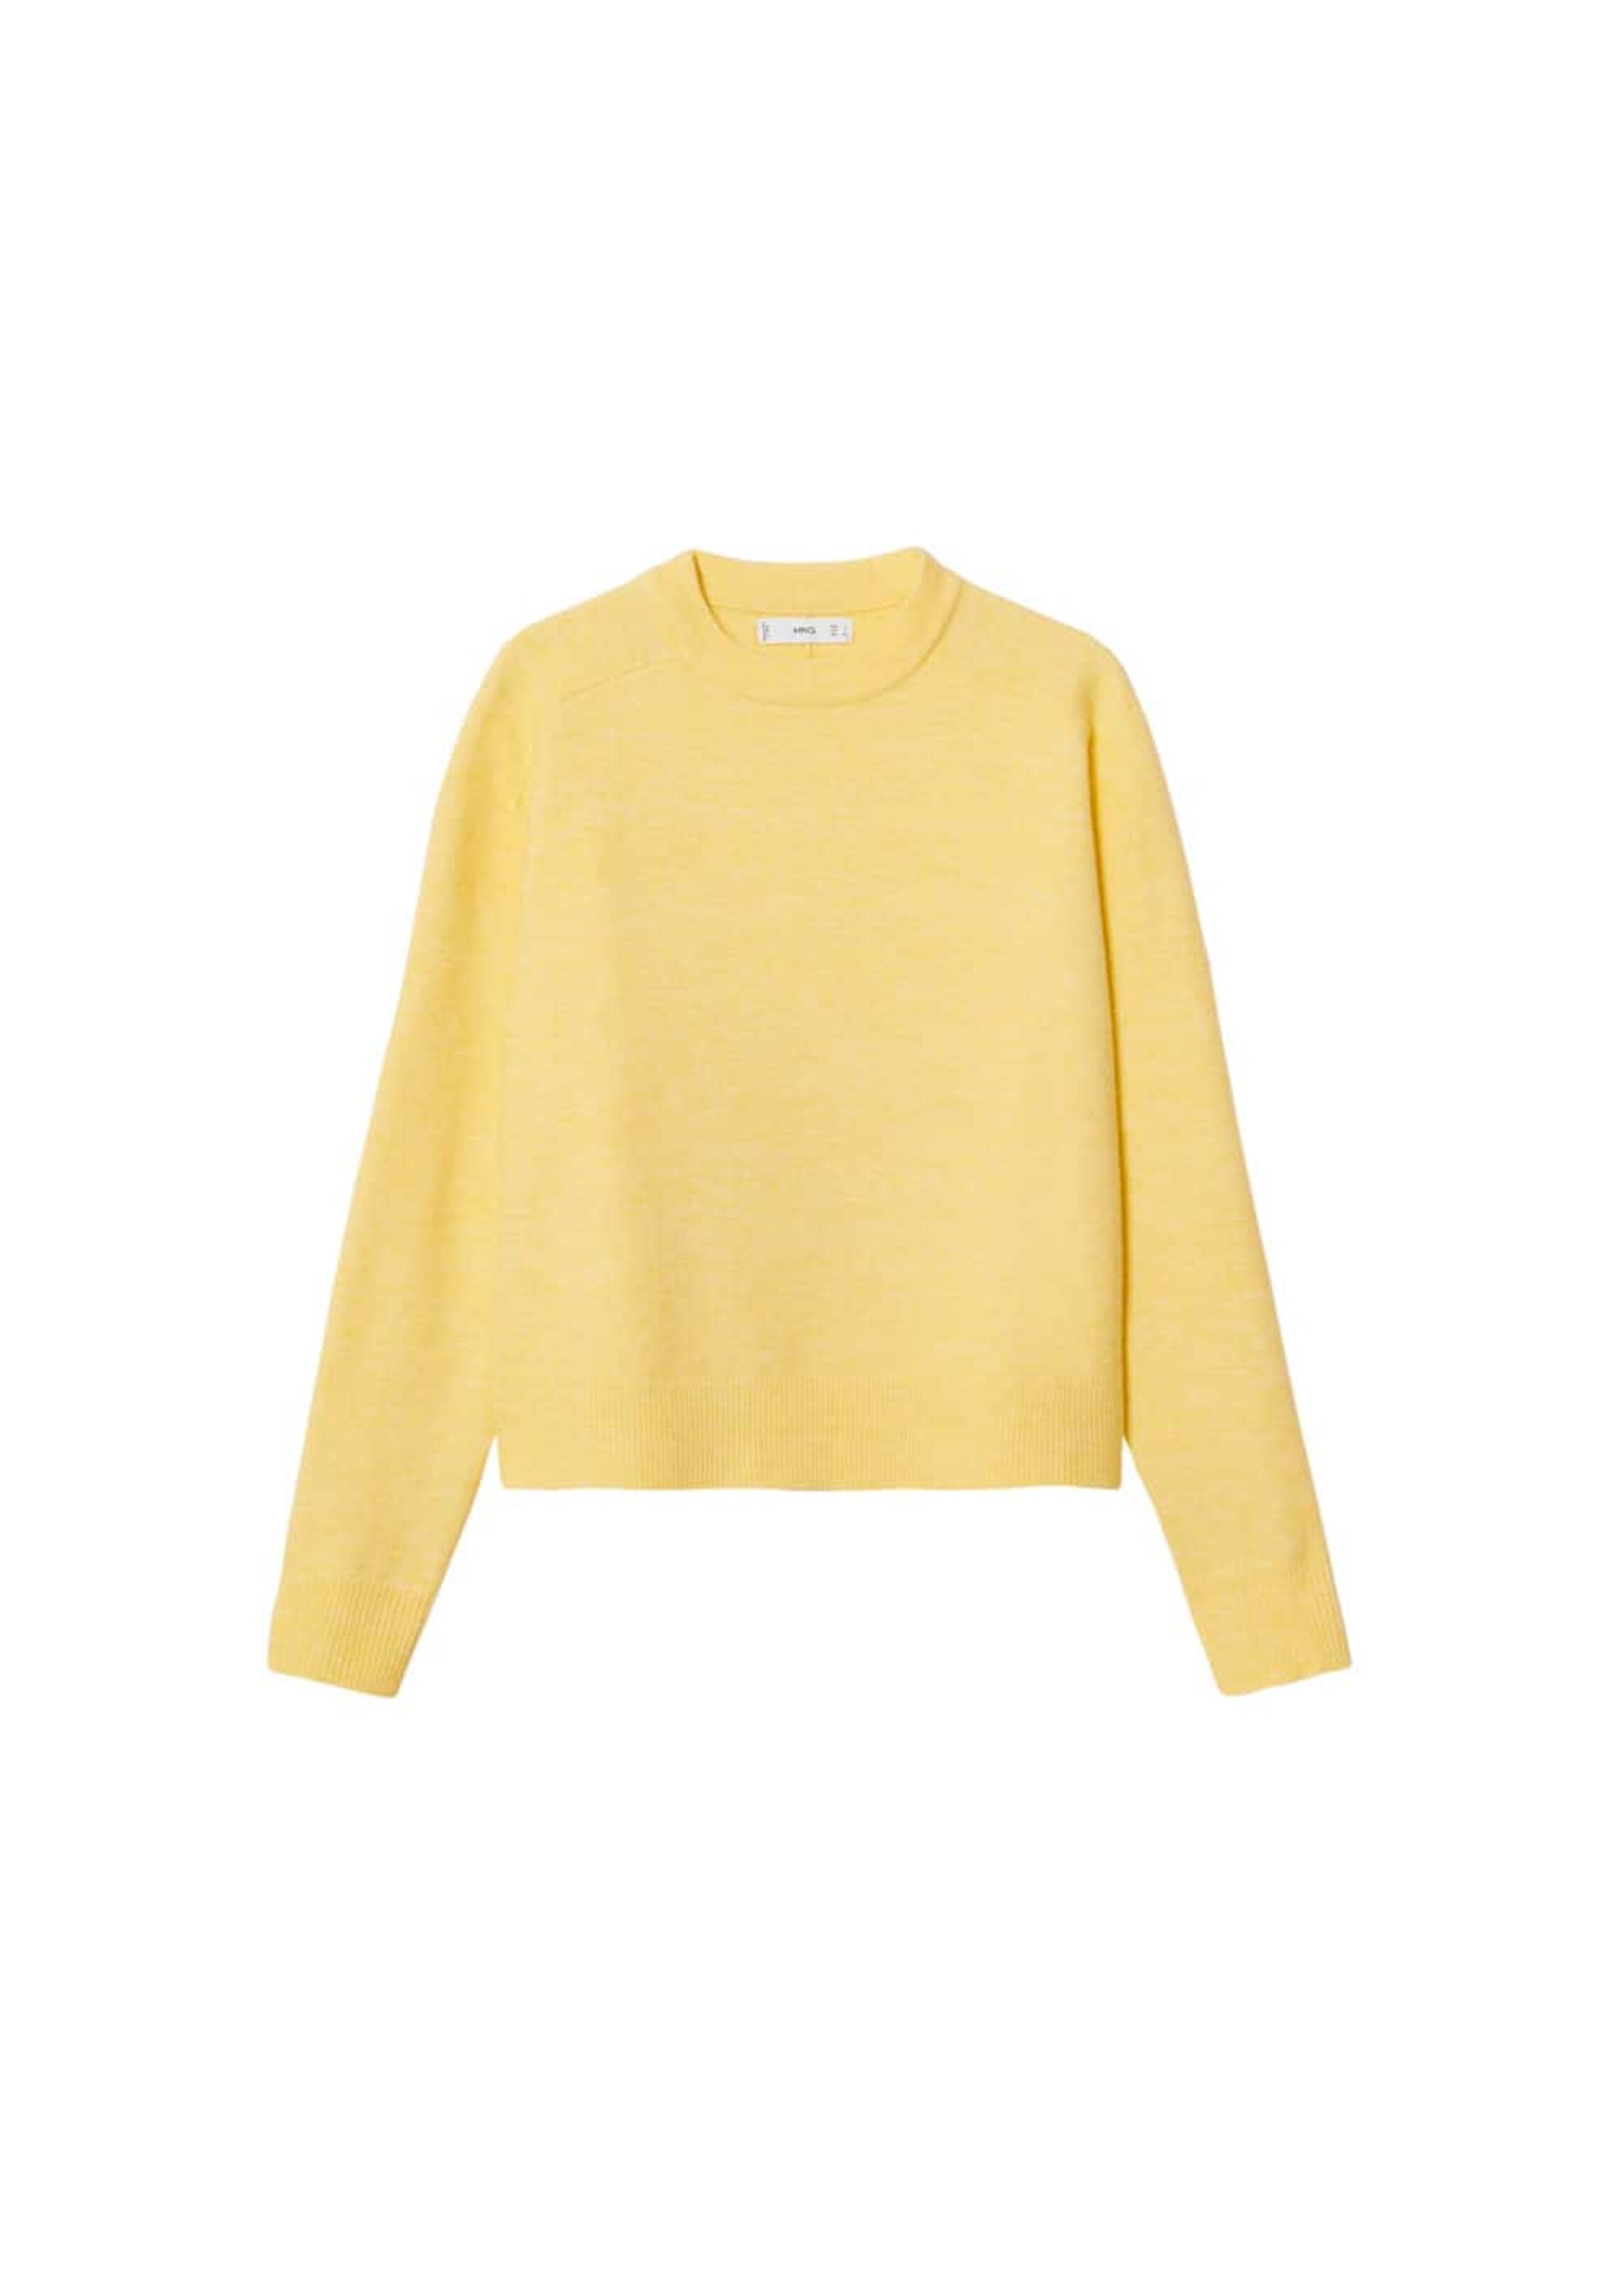 Beige S Rabatt 84 % DAMEN Pullovers & Sweatshirts Pullover Oversize Mango Pullover 